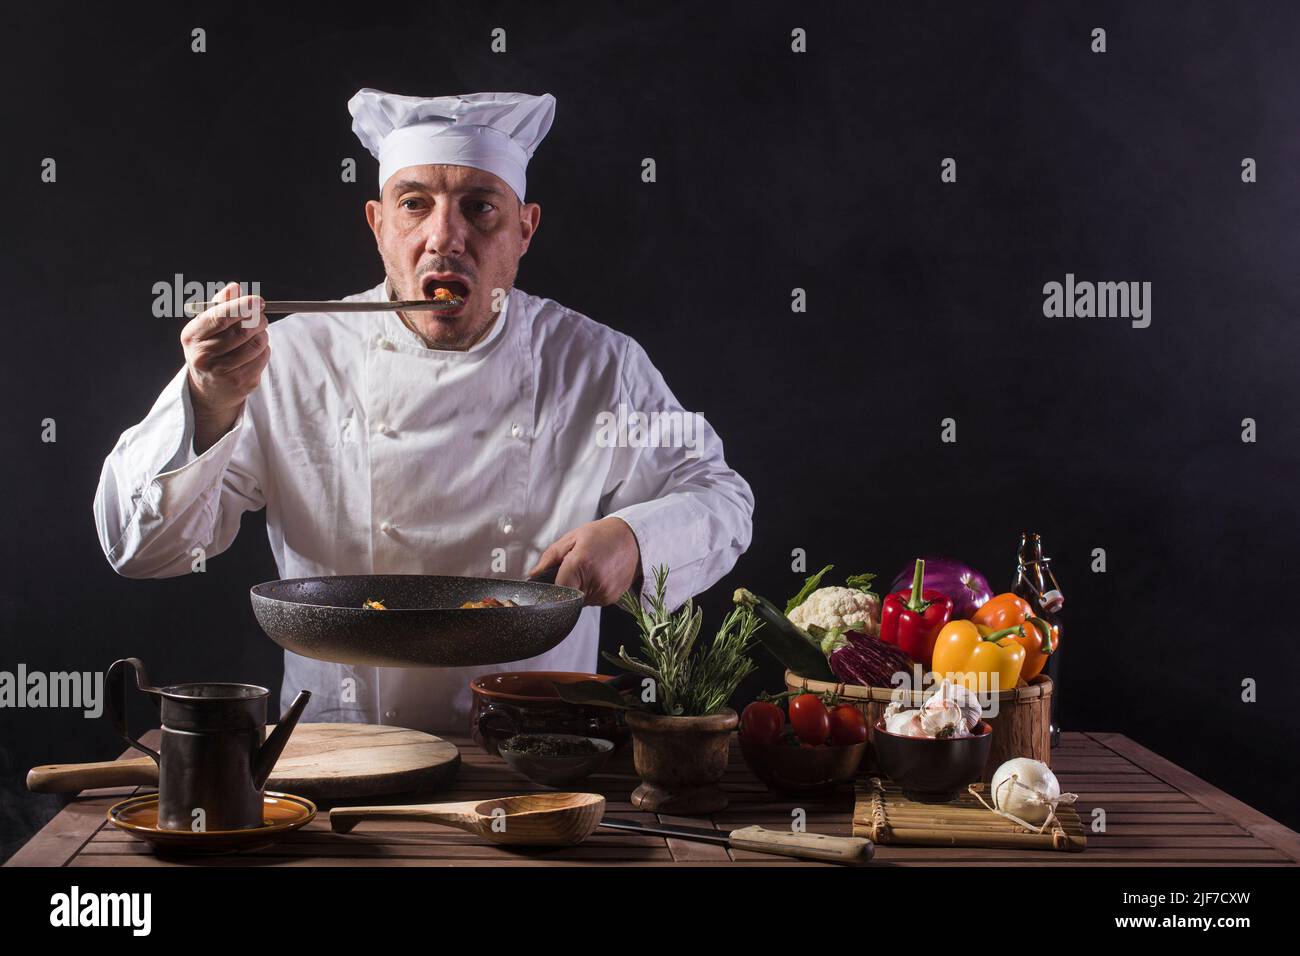 Chef masculino con uniforme blanco es probar la comida utilizando un ladle de madera en la cocina de un restaurante antes de servir mientras trabaja en una cocina de restaurante Foto de stock